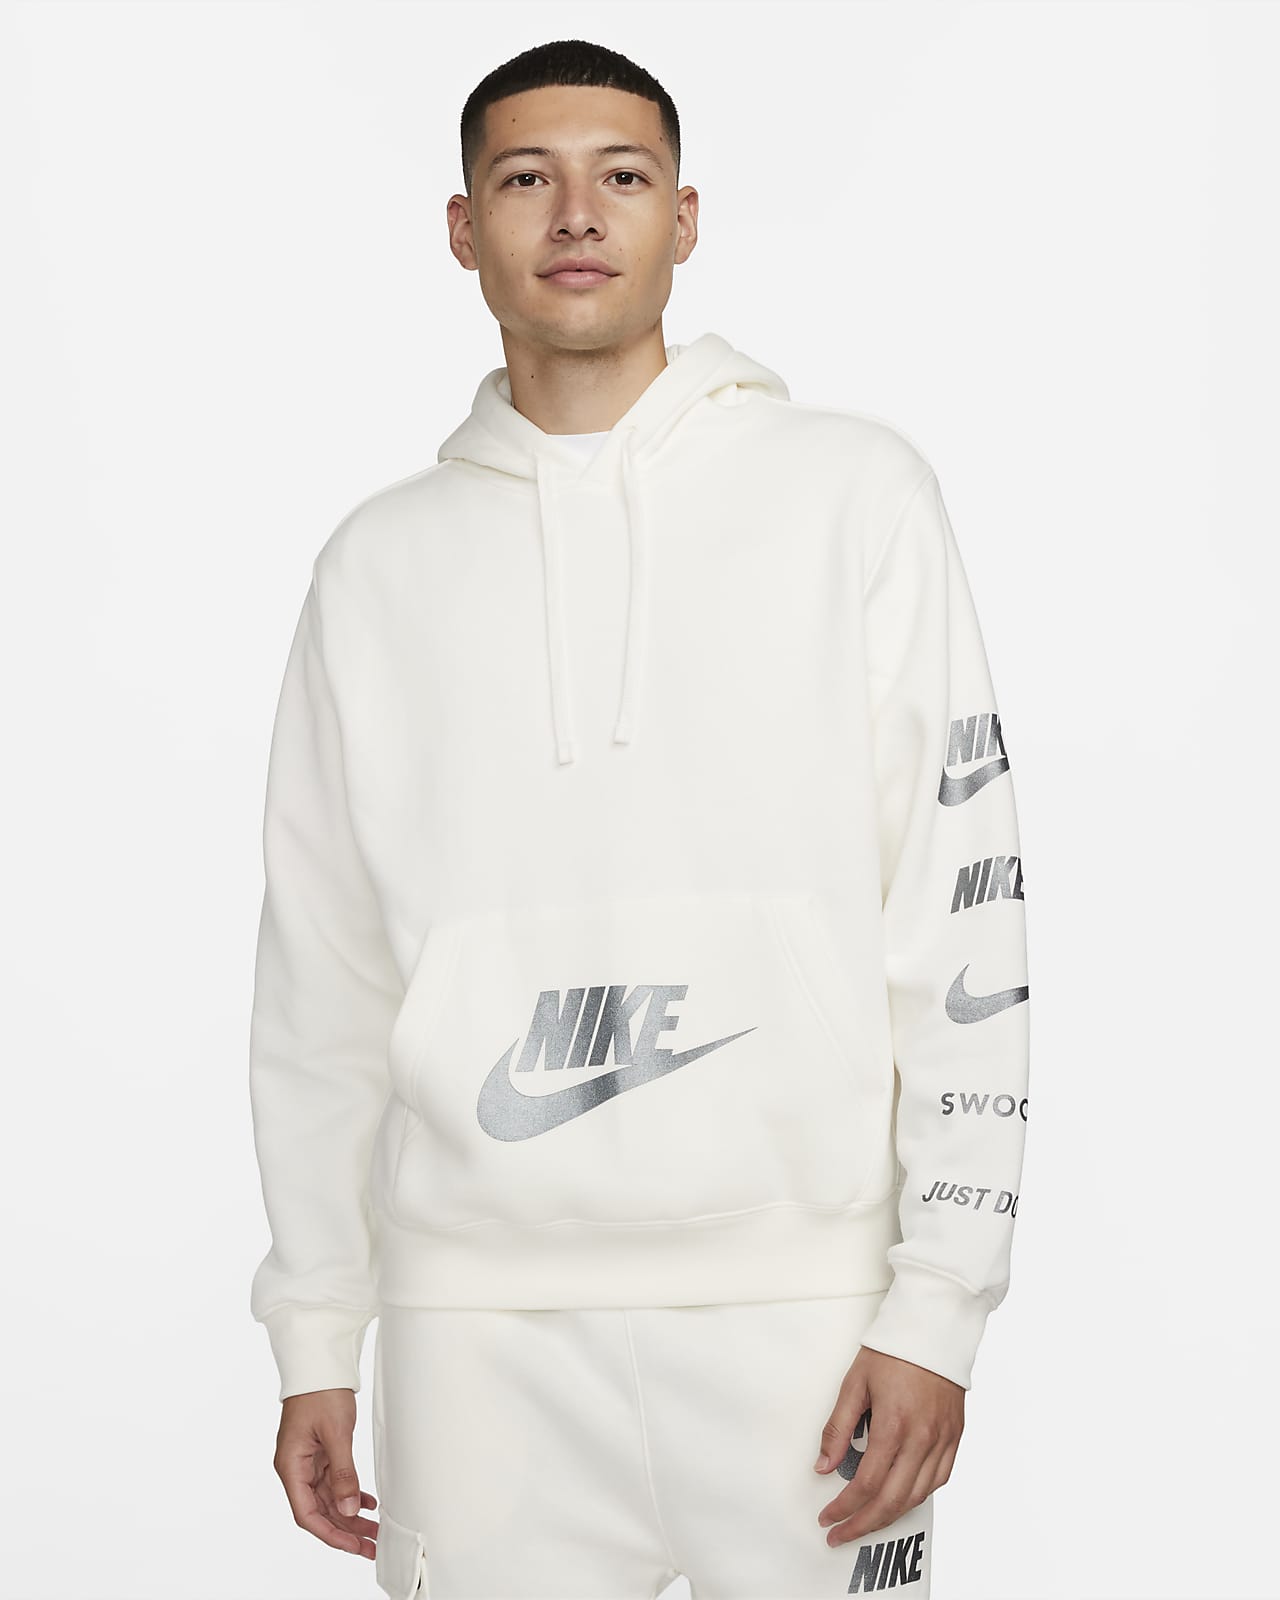 Nike Sportswear Standard Issue Men's Fleece Pullover Hoodie